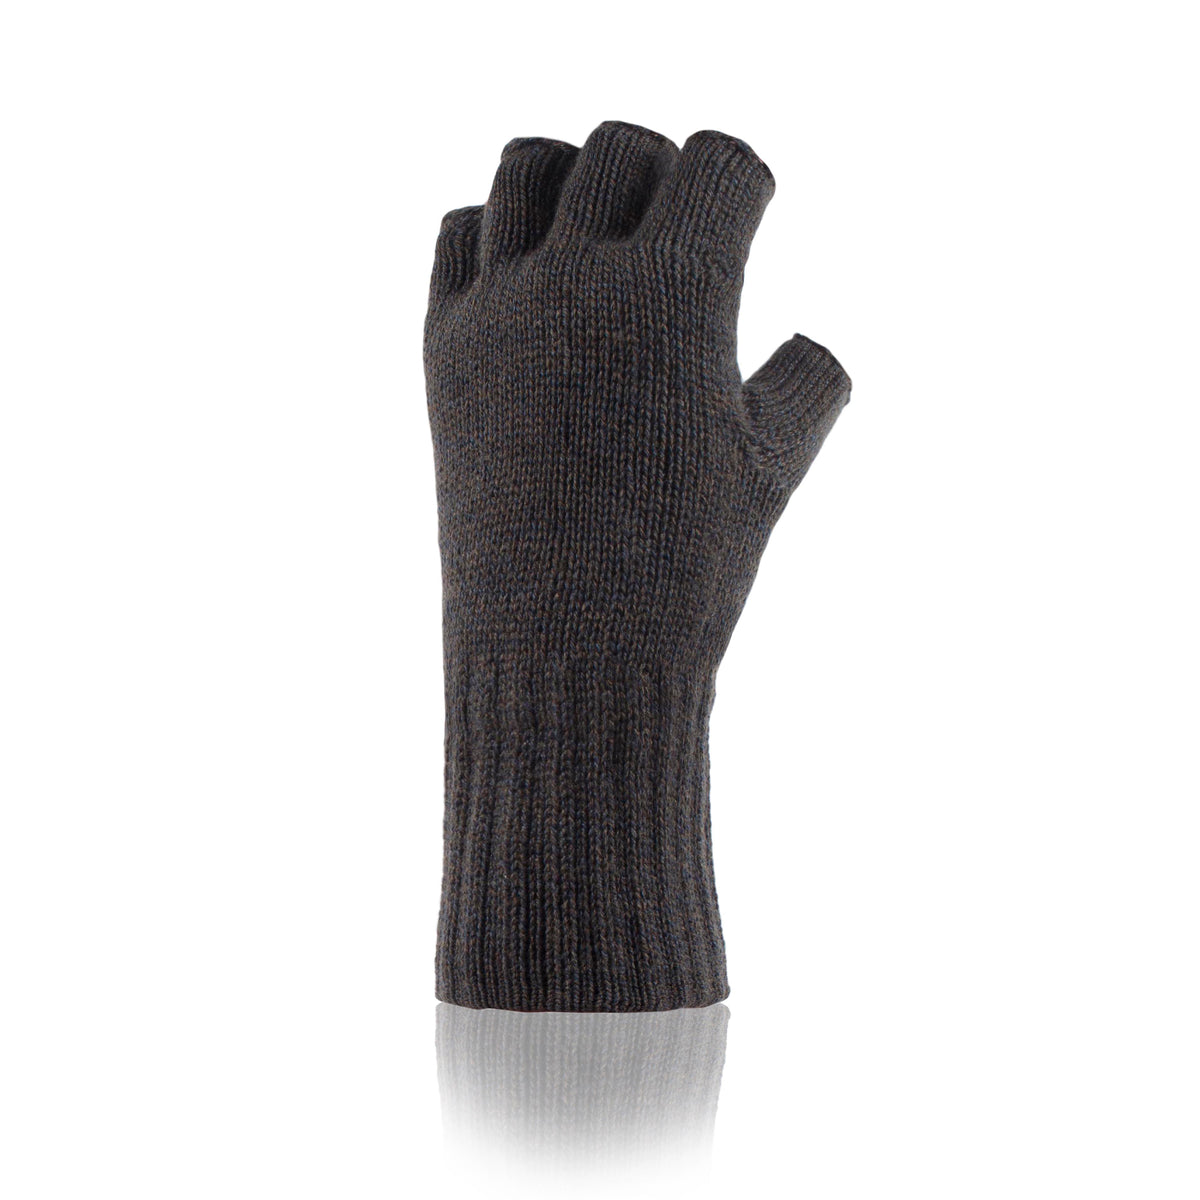 Mens Fingerless Gloves - Khaki – Heat Holders